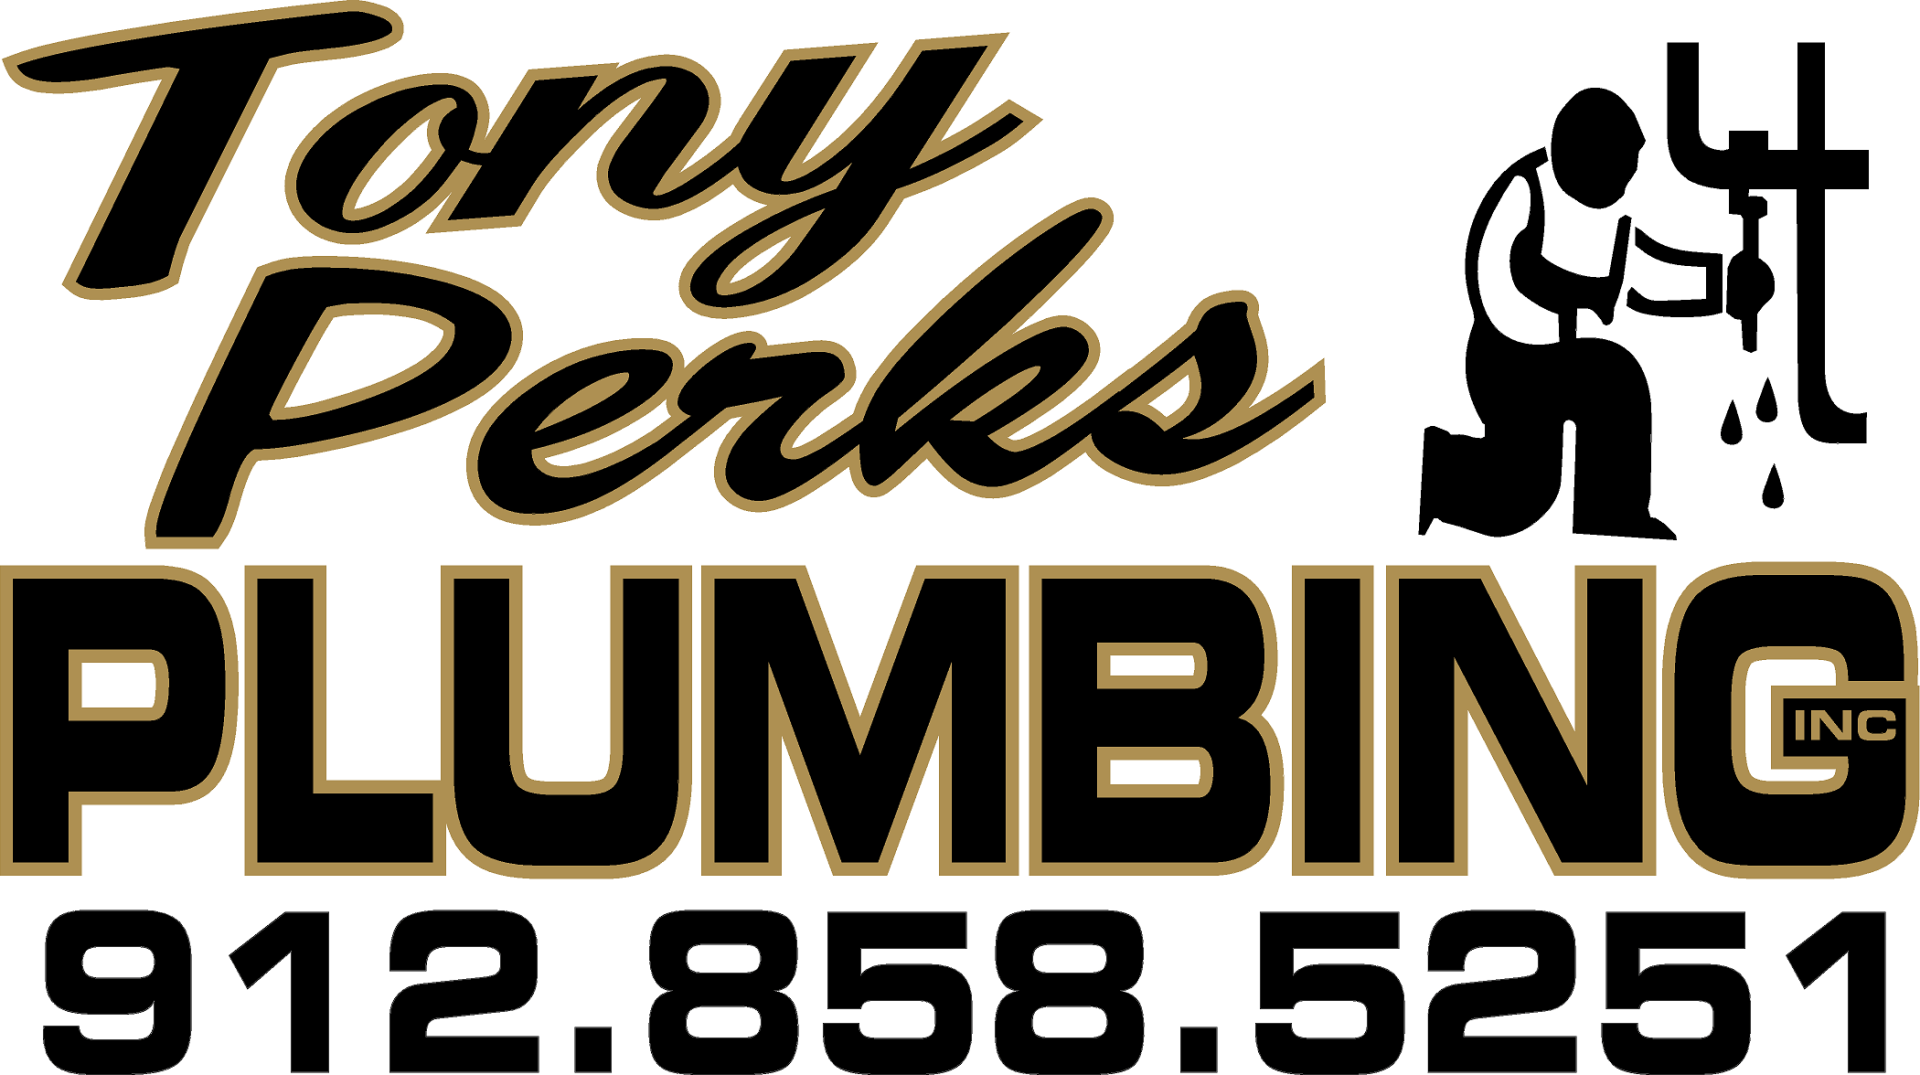 Tony Perks Plumbing, Inc.